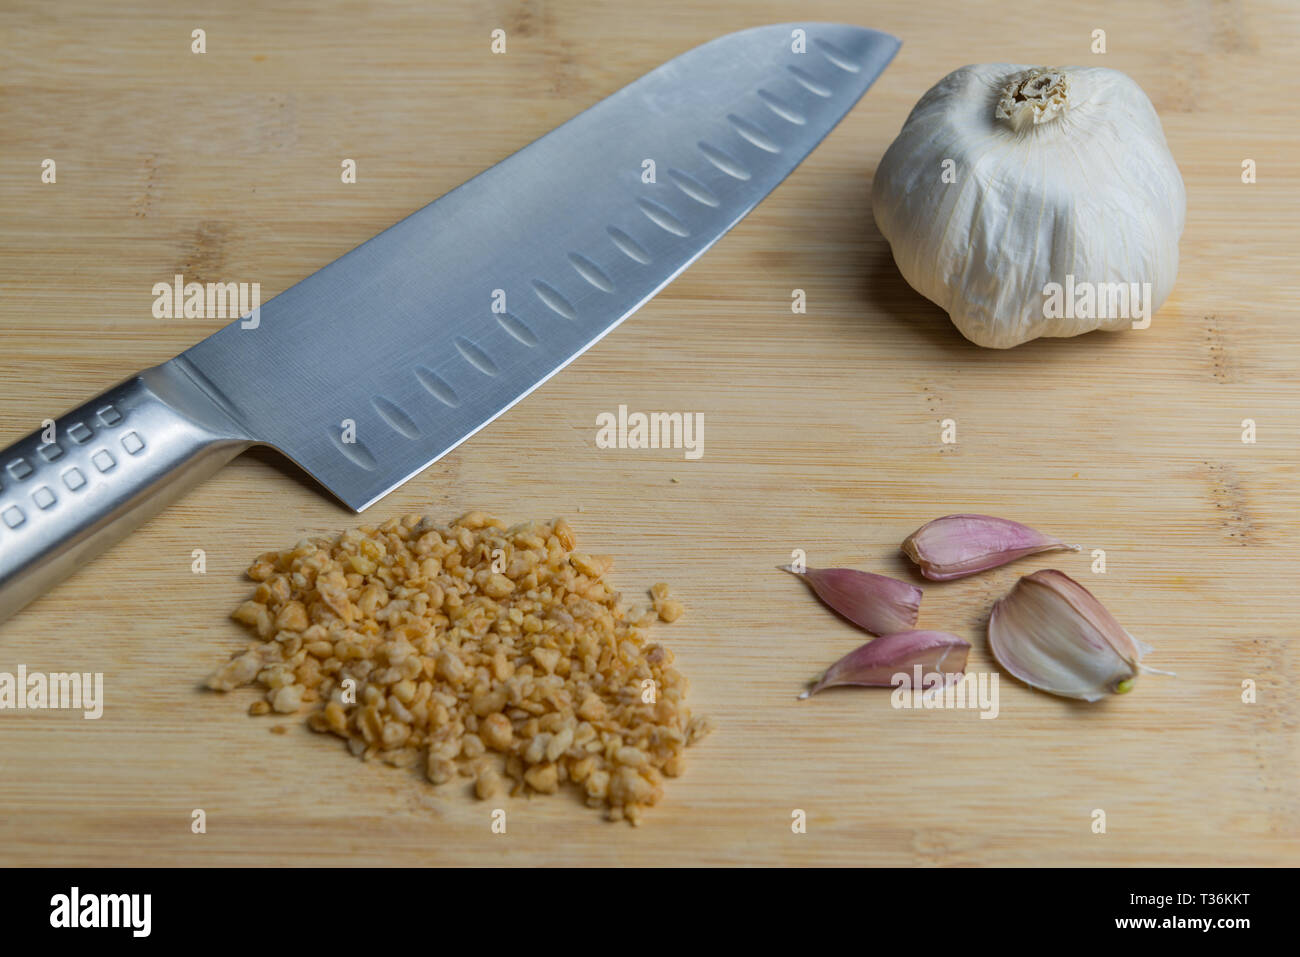 Cuchillo de cocina japonesa ( Santoku ) sobre una tabla para cortar con el ajo, los clavos secos y polvo granulado grueso Foto de stock